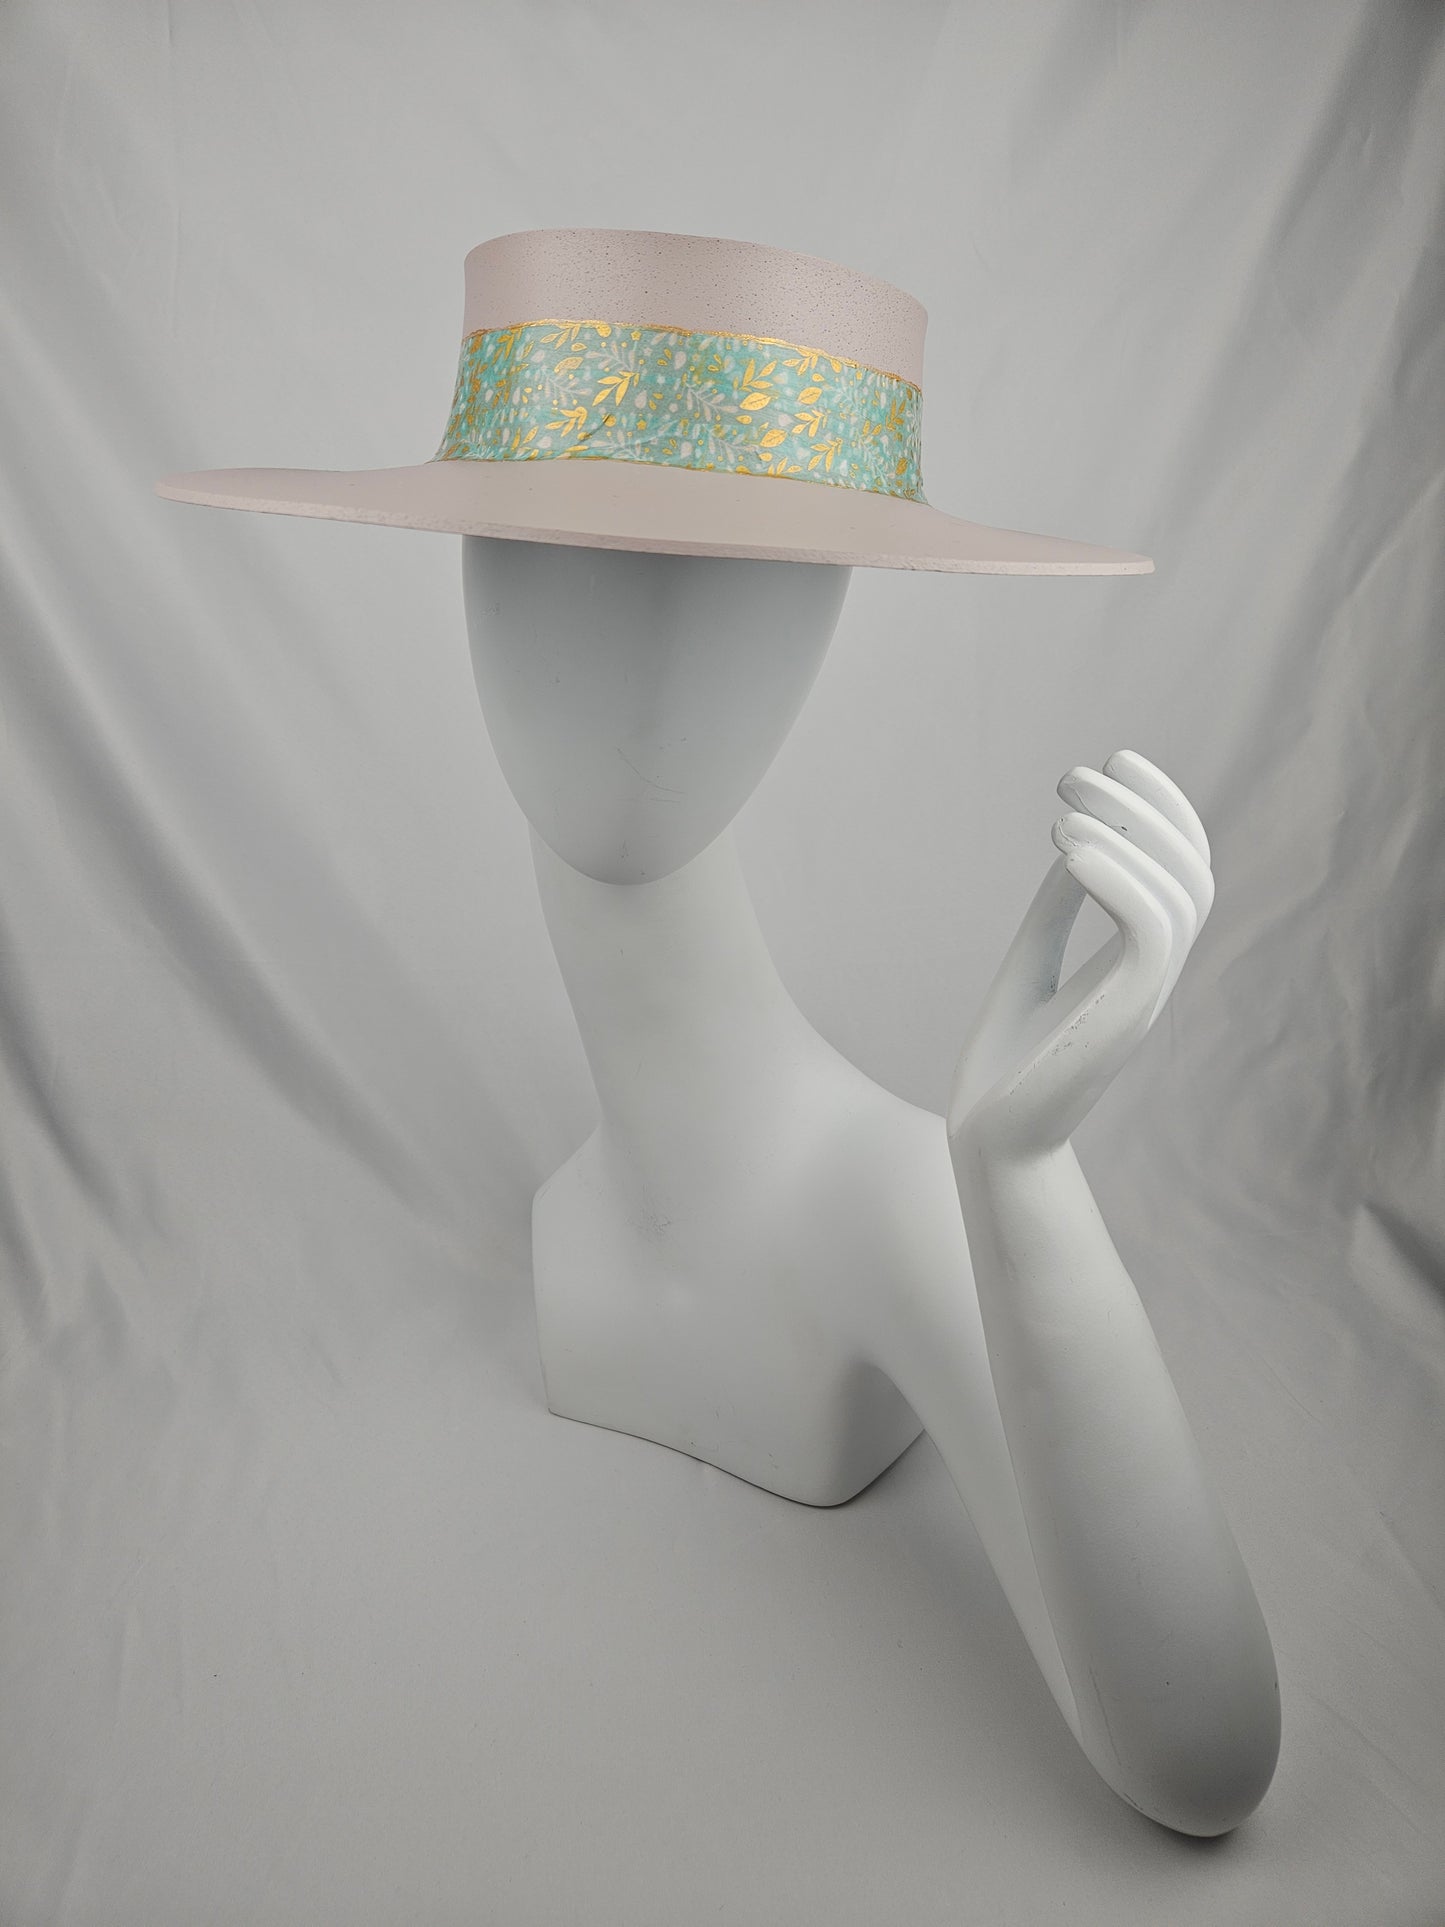 Soft Pink Audrey Foam Sun Visor Hat with Seafoam Green and Gold Band: 1950s, Walks, Brunch, Asian, Golf, Easter, Church, No Headache, Derby